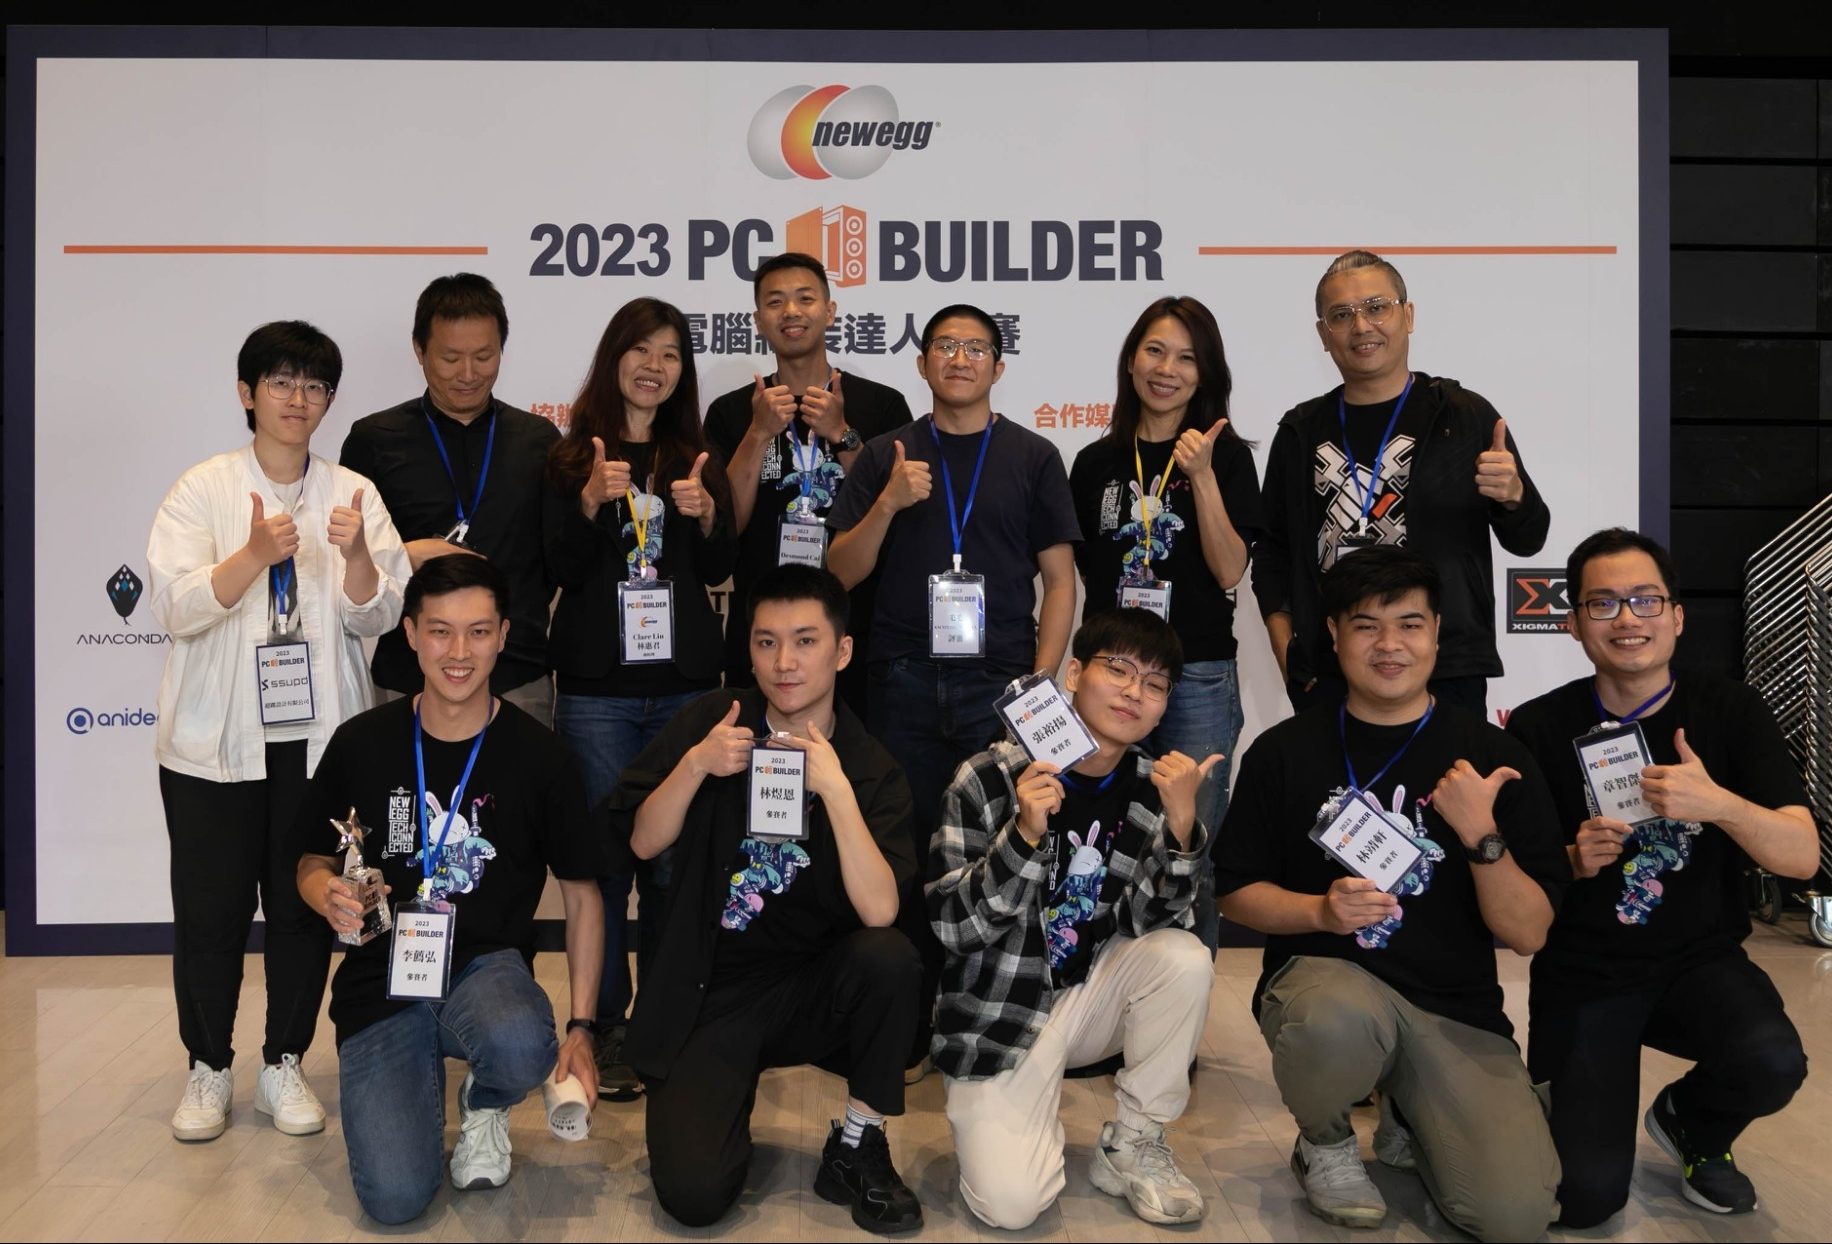 2023/4/22 Newegg PC Builder 電腦組裝達人競賽 – 媒體報導 #2